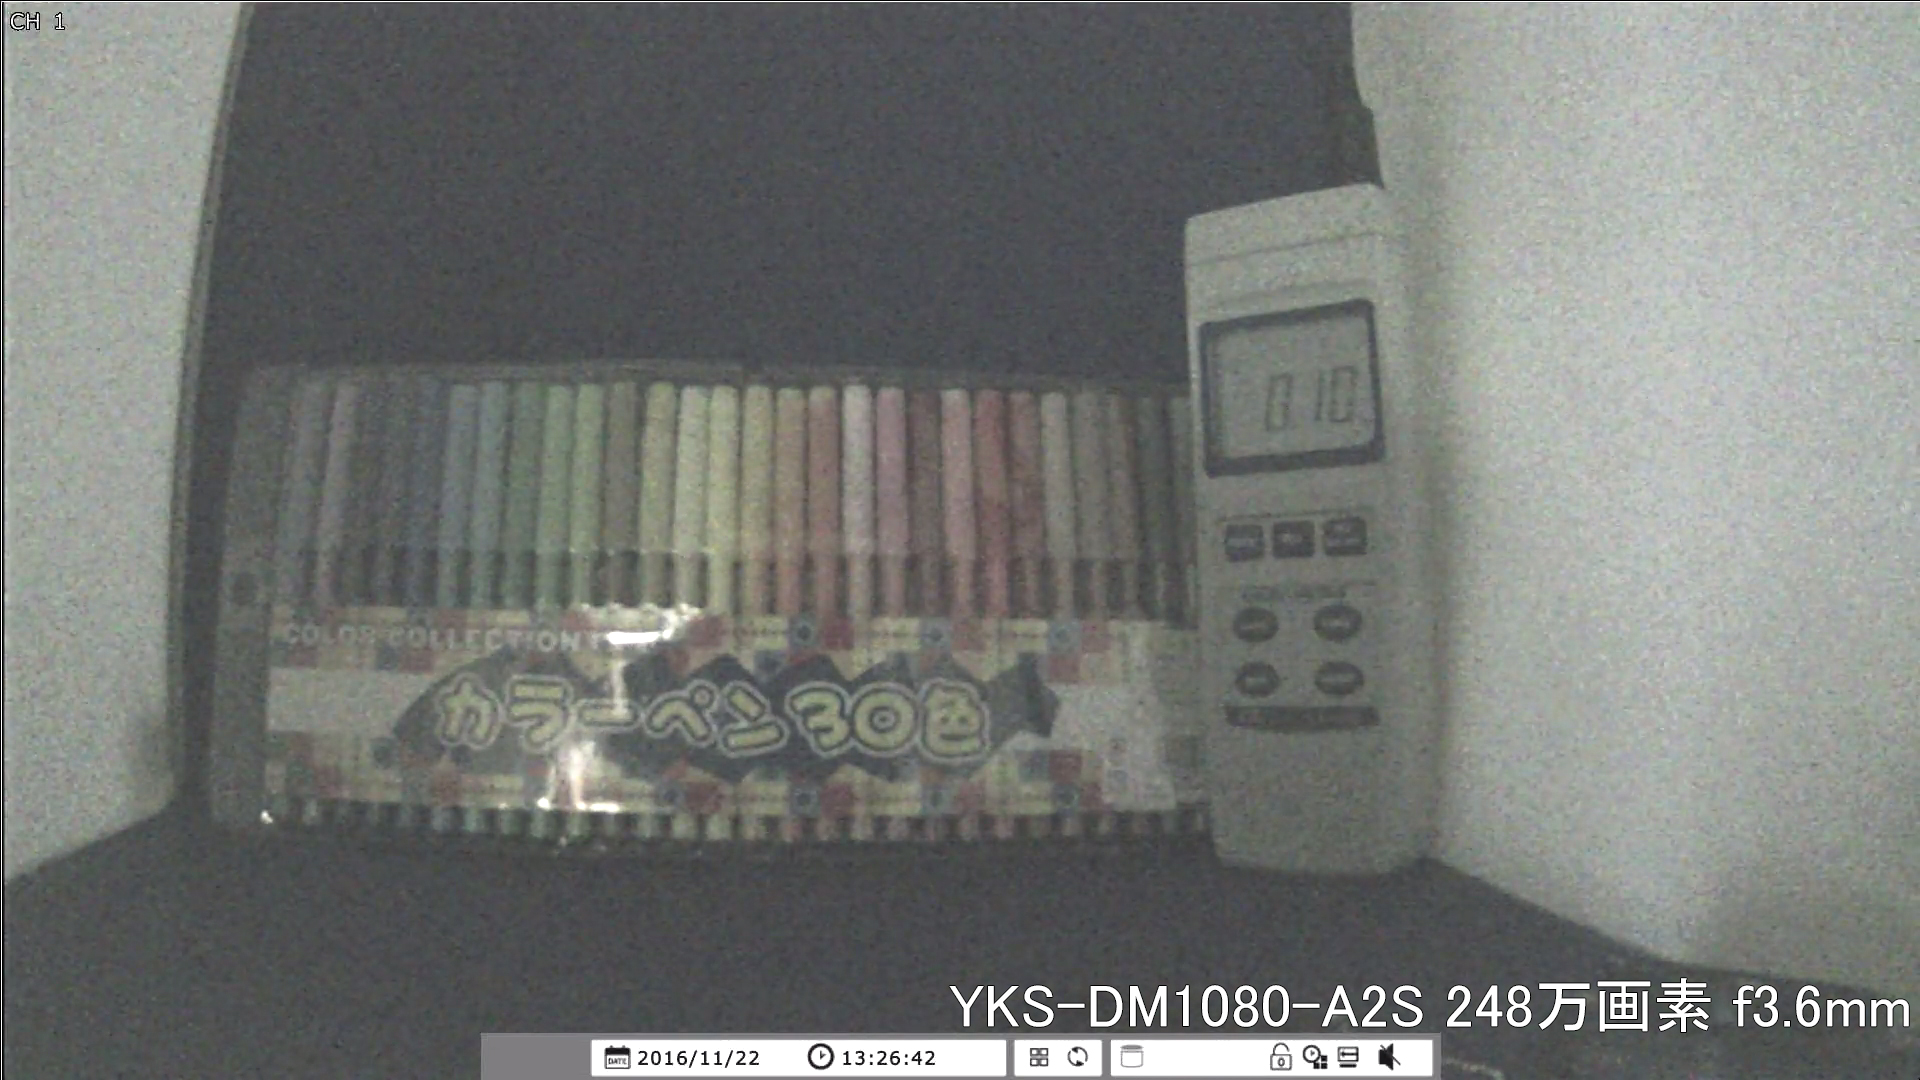 【YKS-DM1080-A2S】 カメラから約40cm離れた被写体を低照度撮影